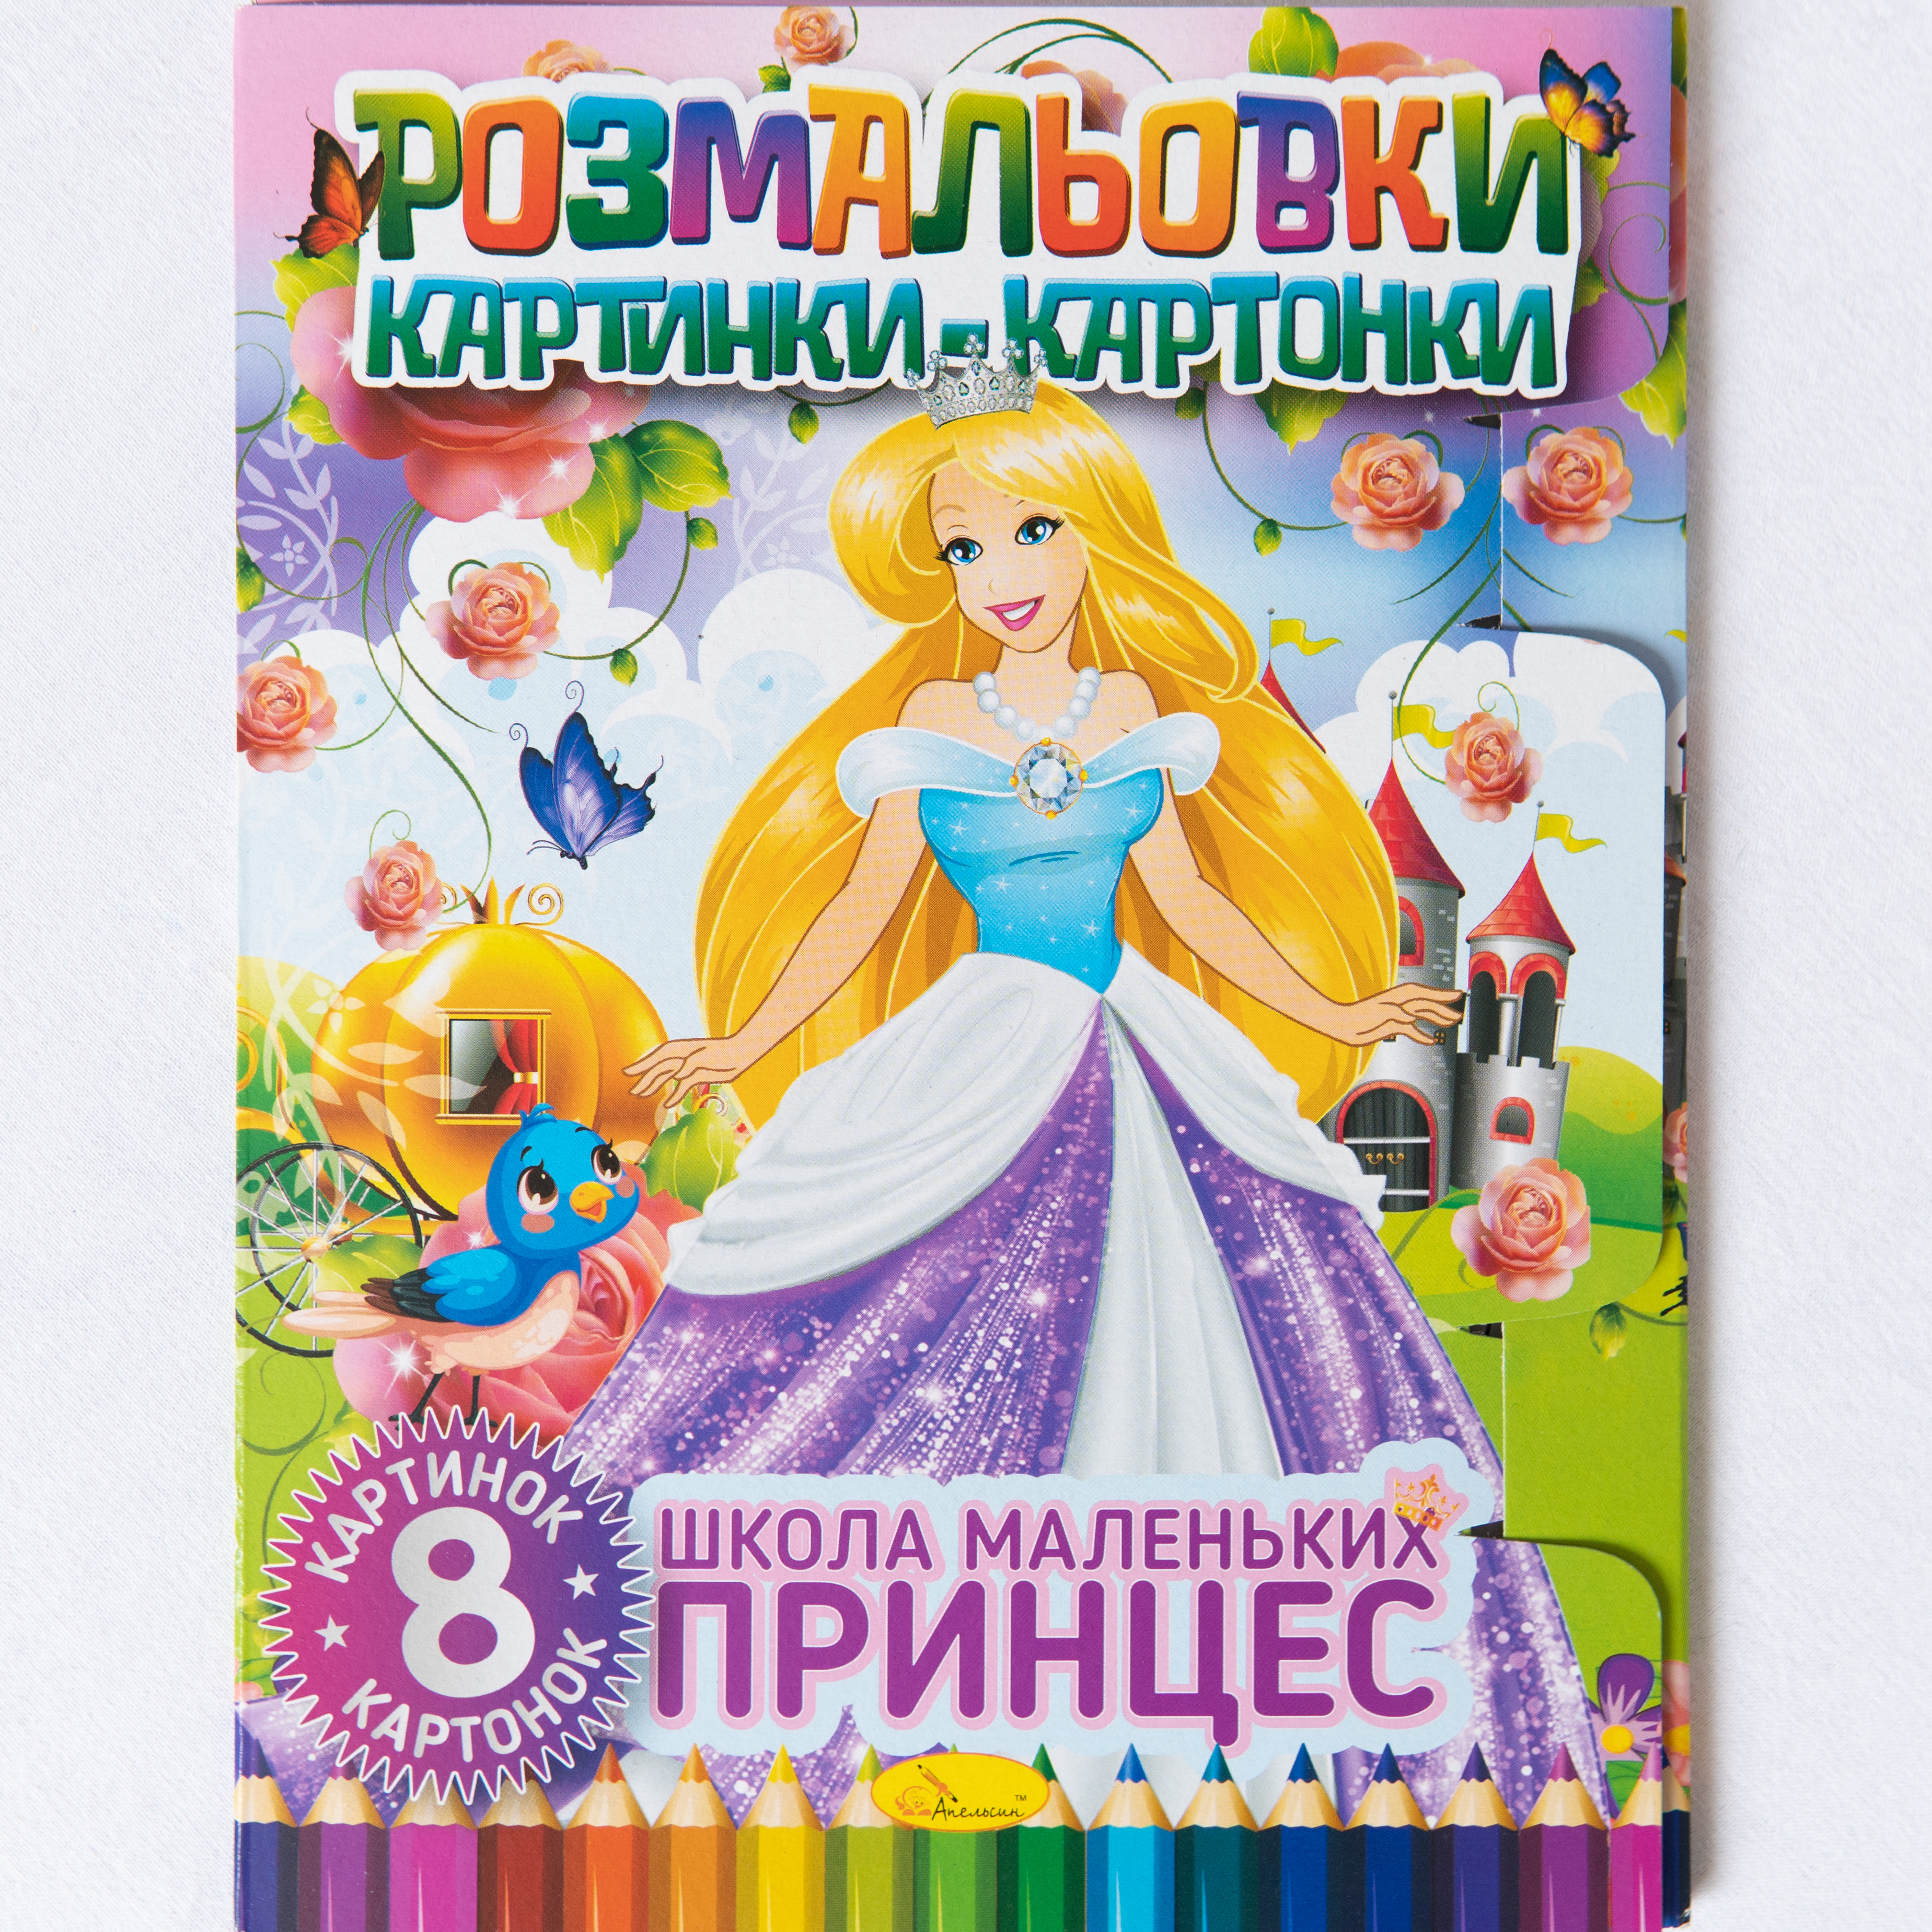 Malbuch mit Kartonbildern Schule der kleinen Prinzessinnen/Malbuch mit Kartonbildern Schule der kleinen Prinzessinnen